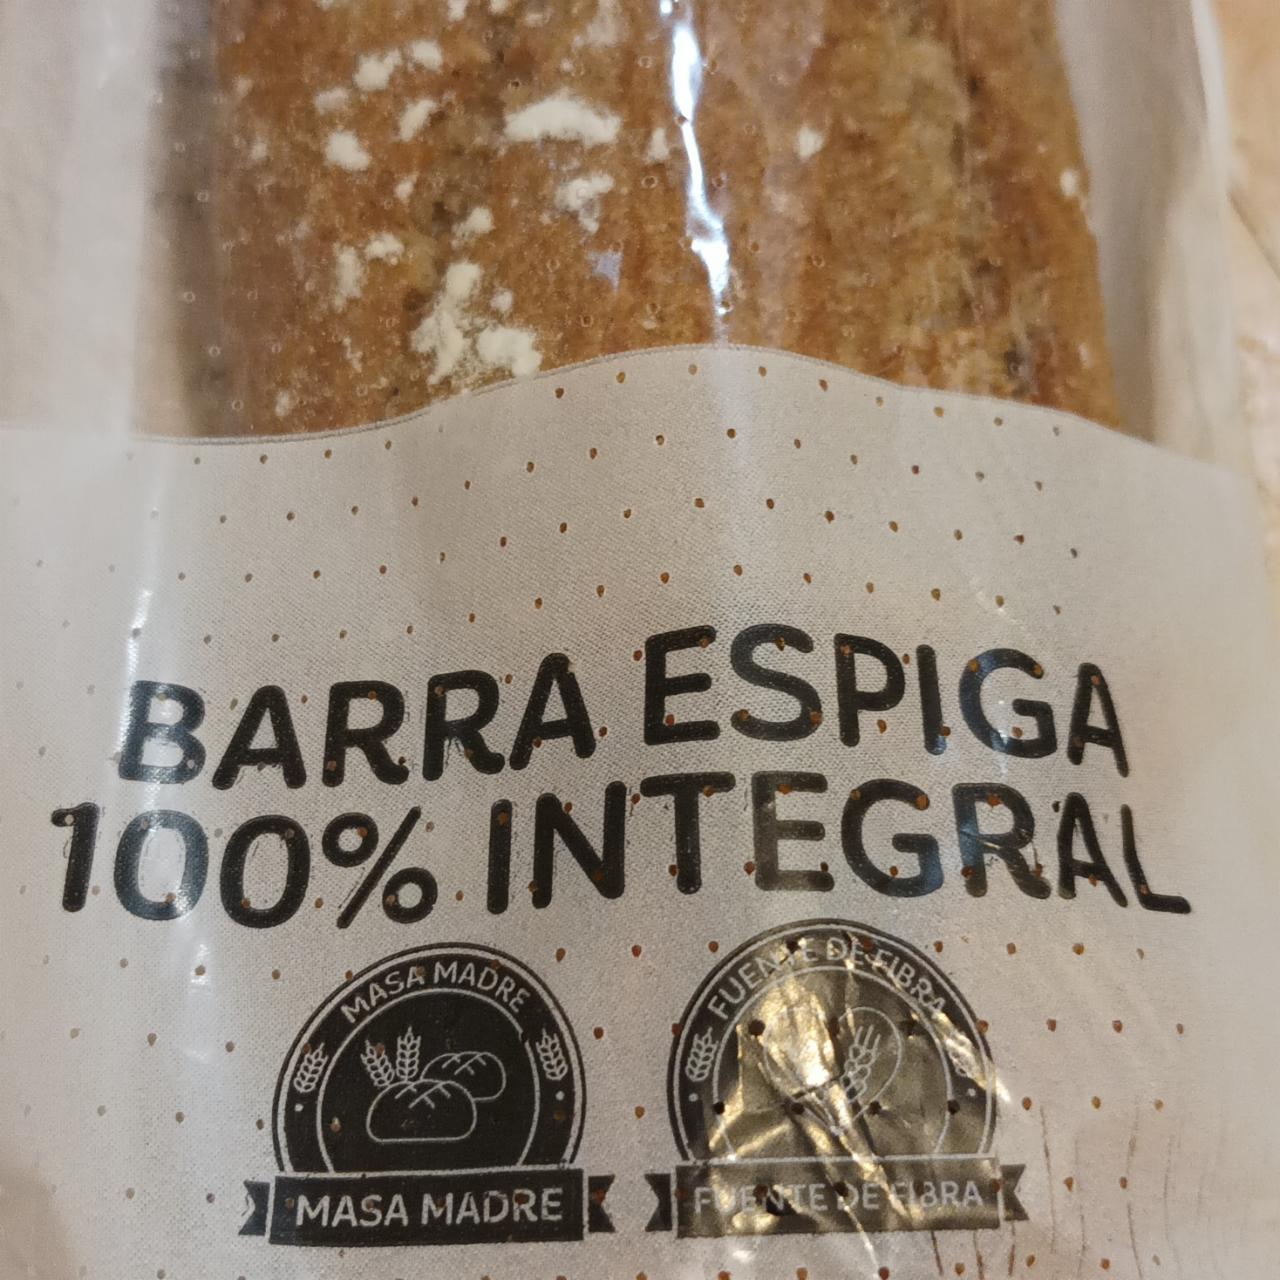 Fotografie - Barra espiga 100% integral